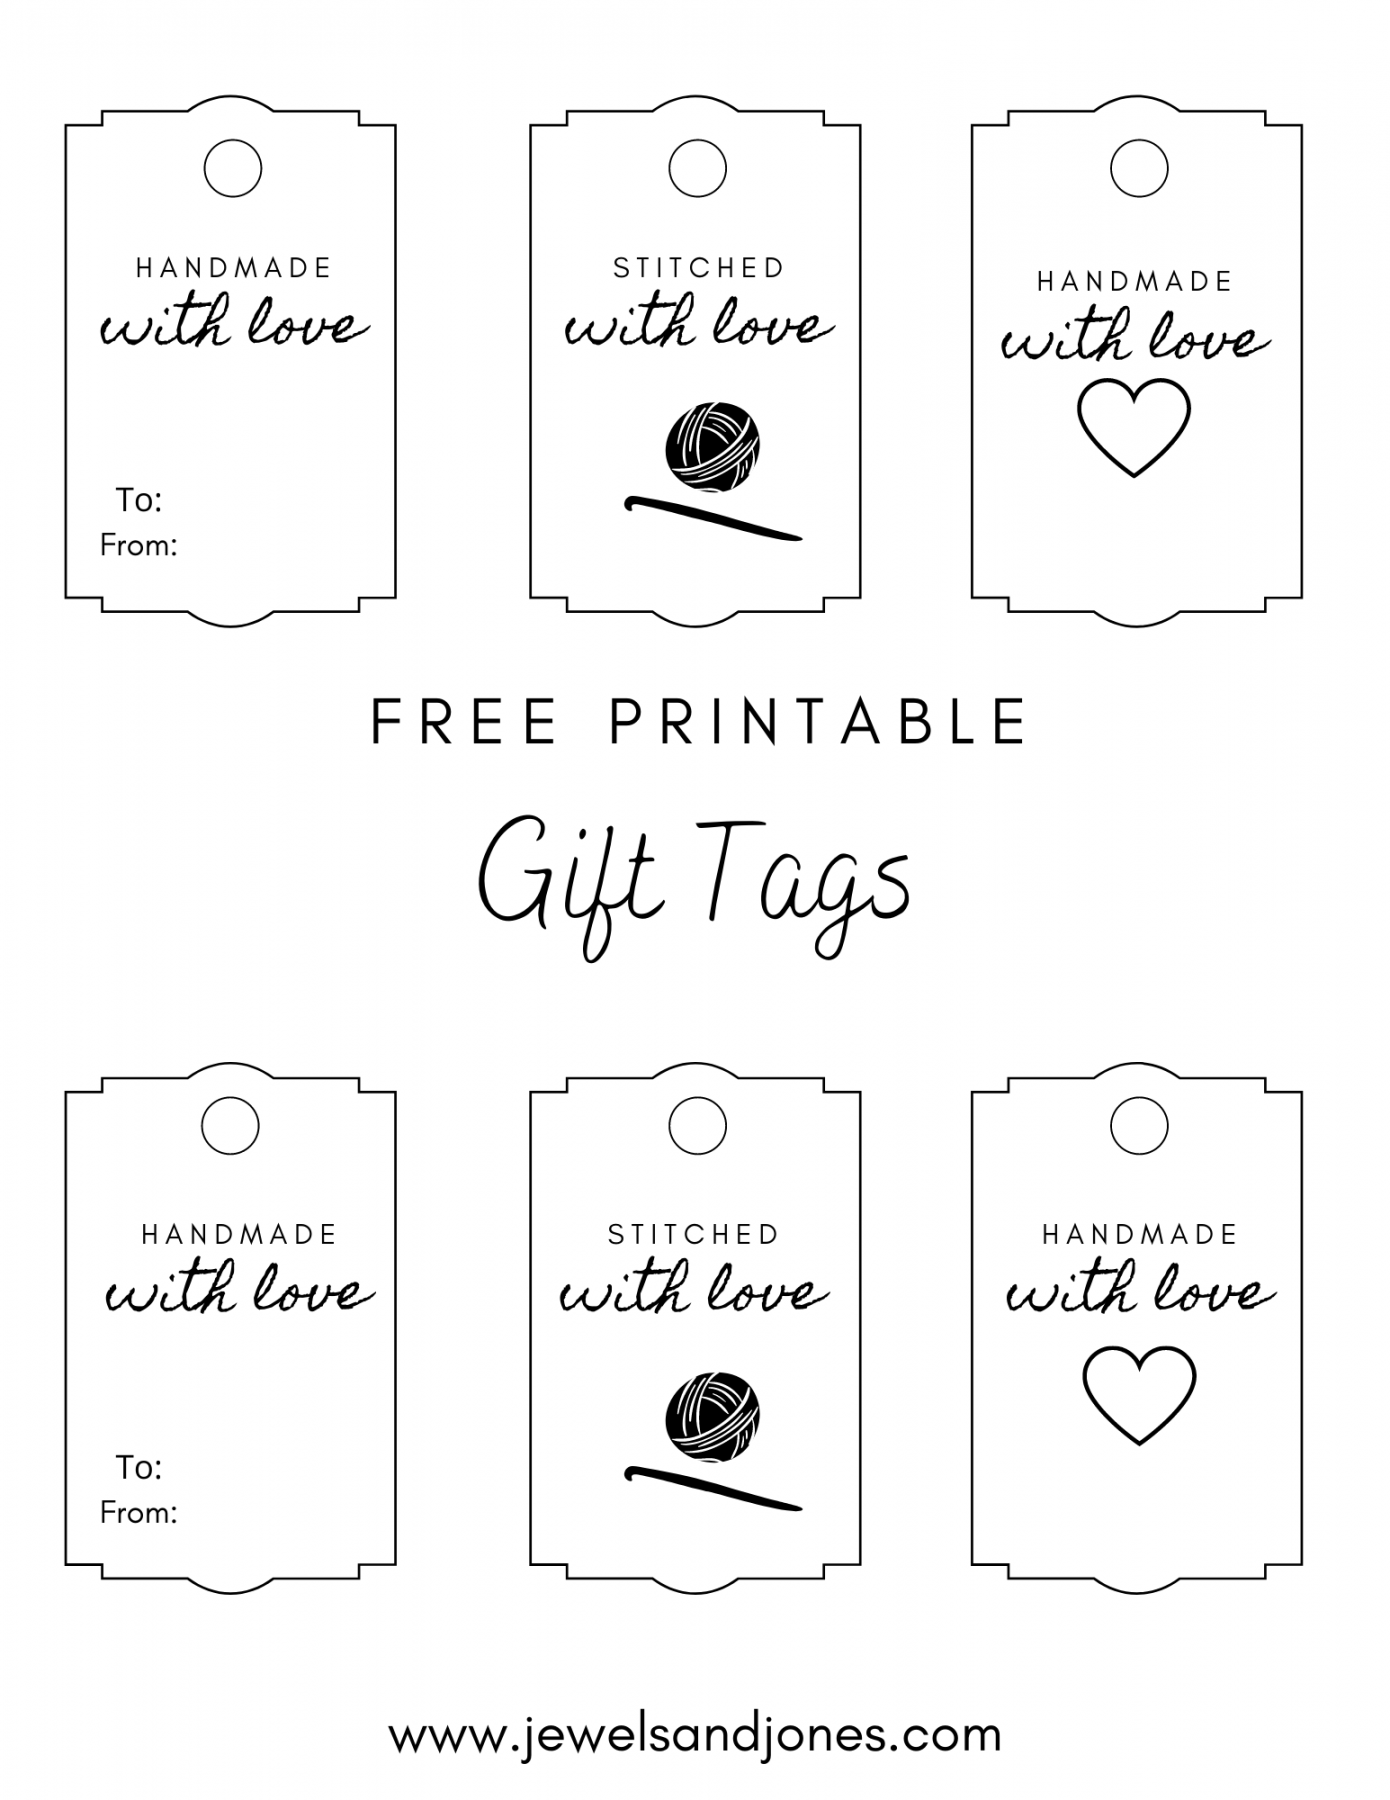 Gift Tags Printable Free - Printable - Crochet Gift Tags - Free Printable - Jewels and Jones